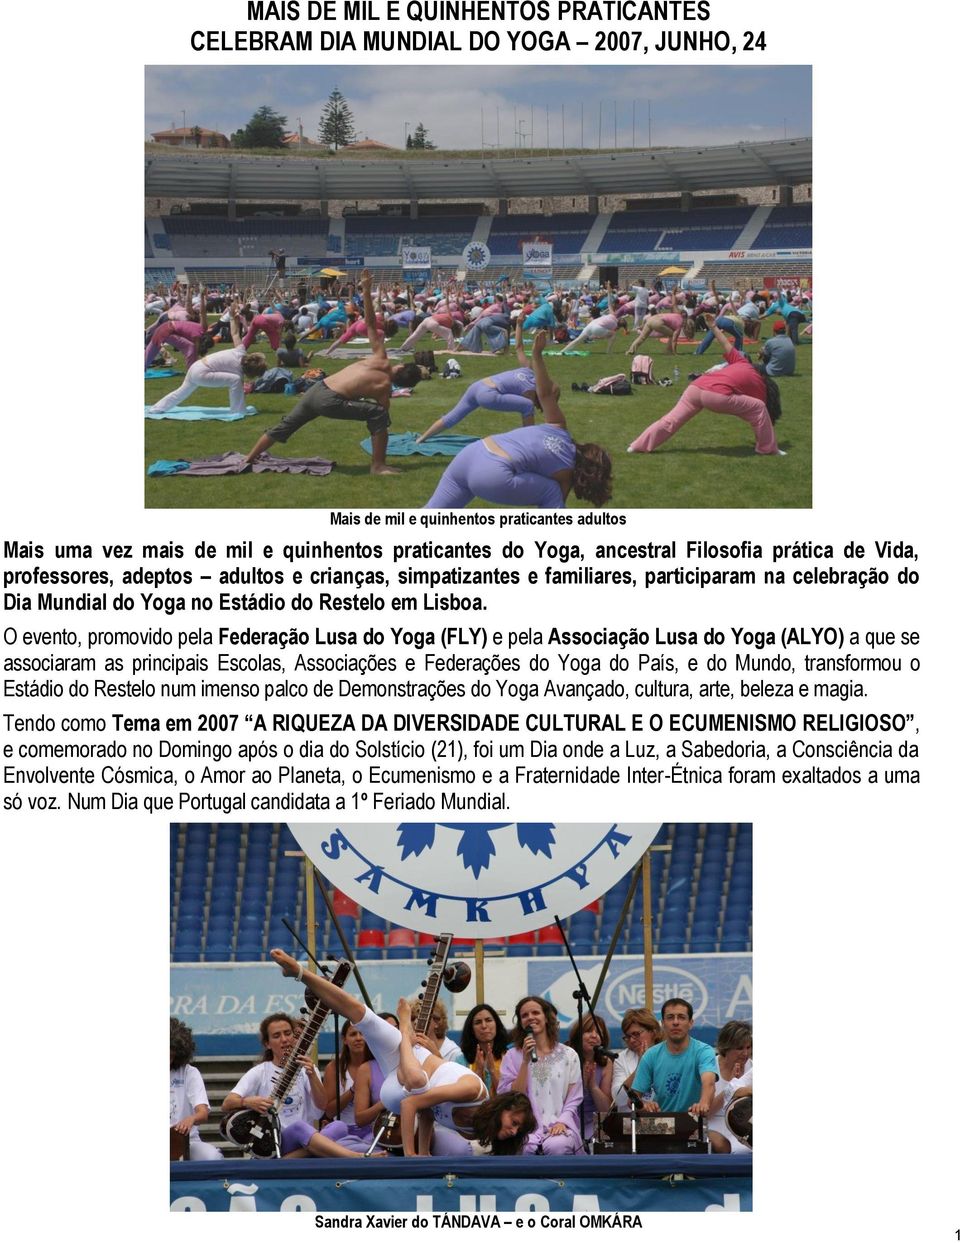 O evento, promovido pela Federação Lusa do Yoga (FLY) e pela Associação Lusa do Yoga (ALYO) a que se associaram as principais Escolas, Associações e Federações do Yoga do País, e do Mundo,